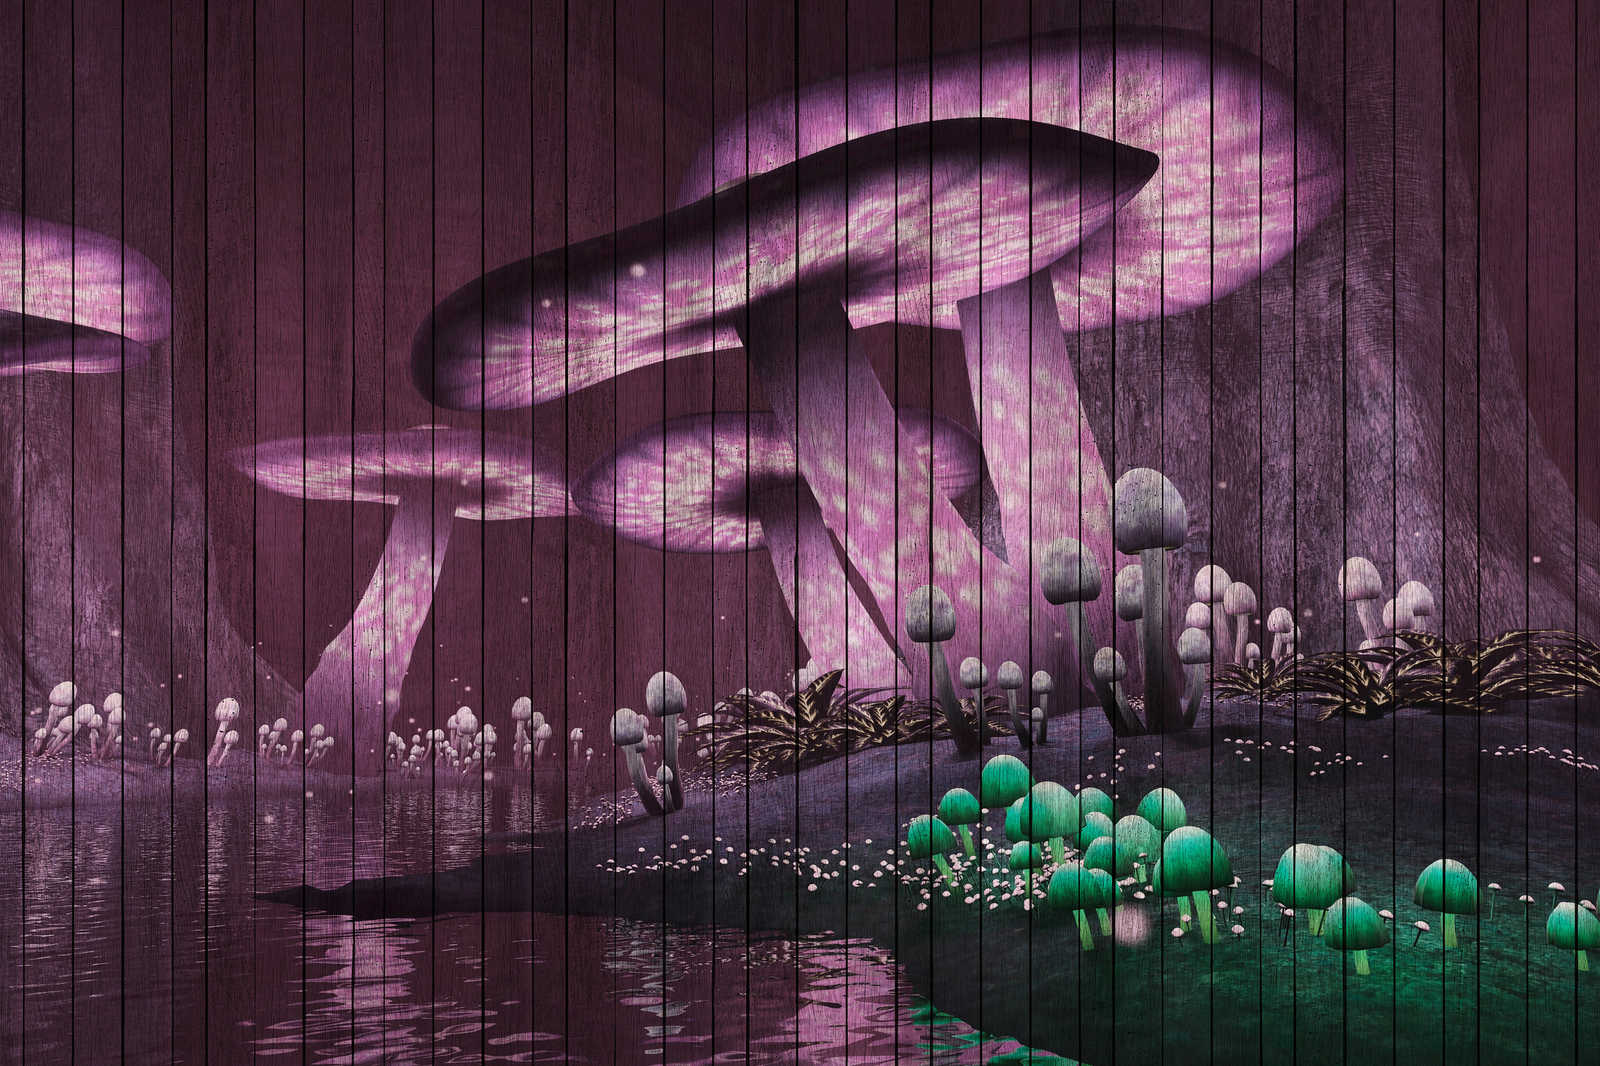             Fantasy 2 - Toile forêt magique avec structure en panneaux de bois - 0,90 m x 0,60 m
        